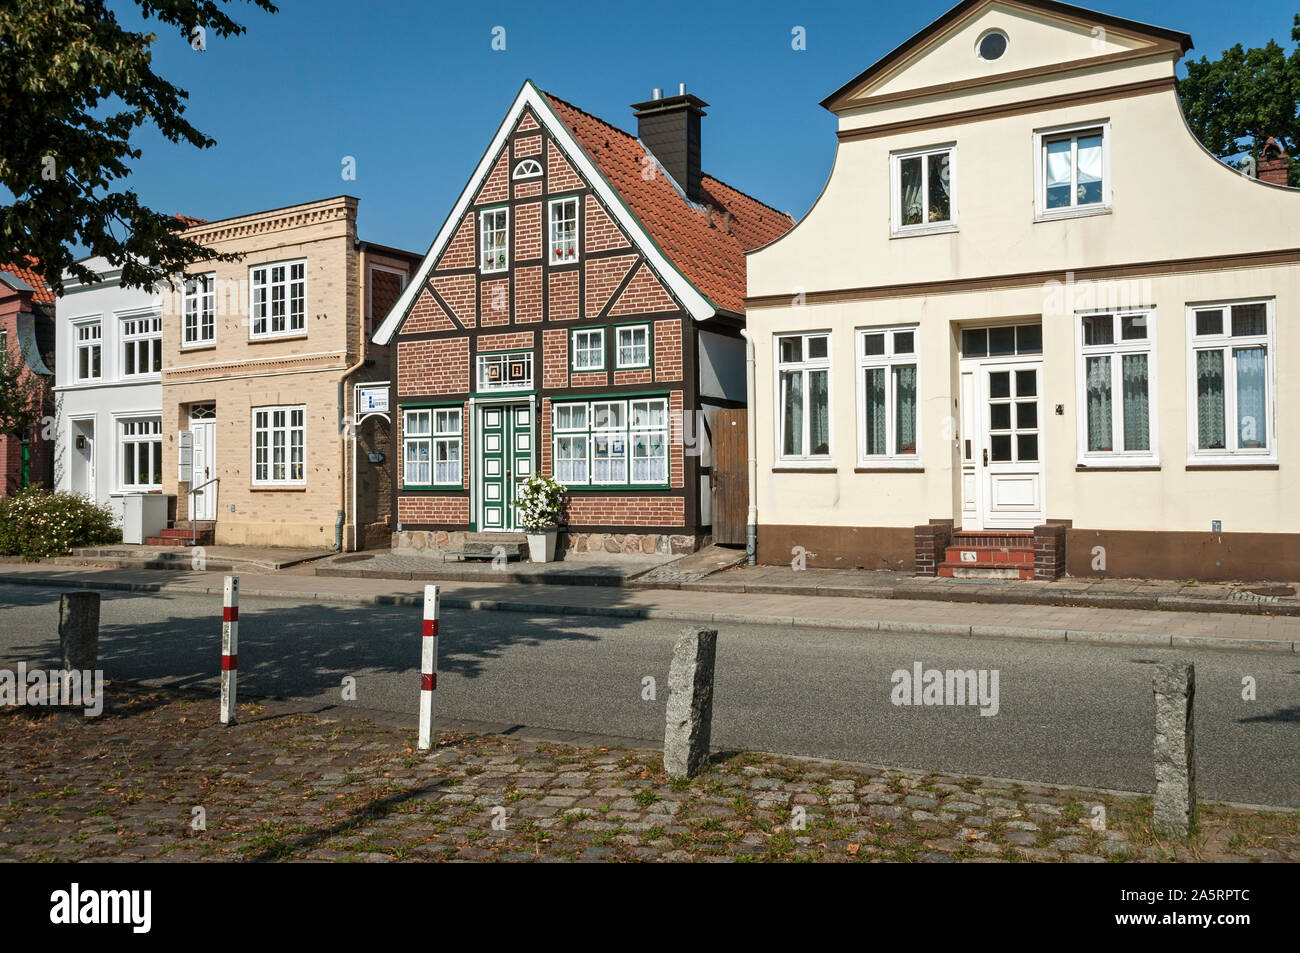 Maisons de la vieille ville (Altstadt), Travemünde, Luebeck, Allemagne. Banque D'Images